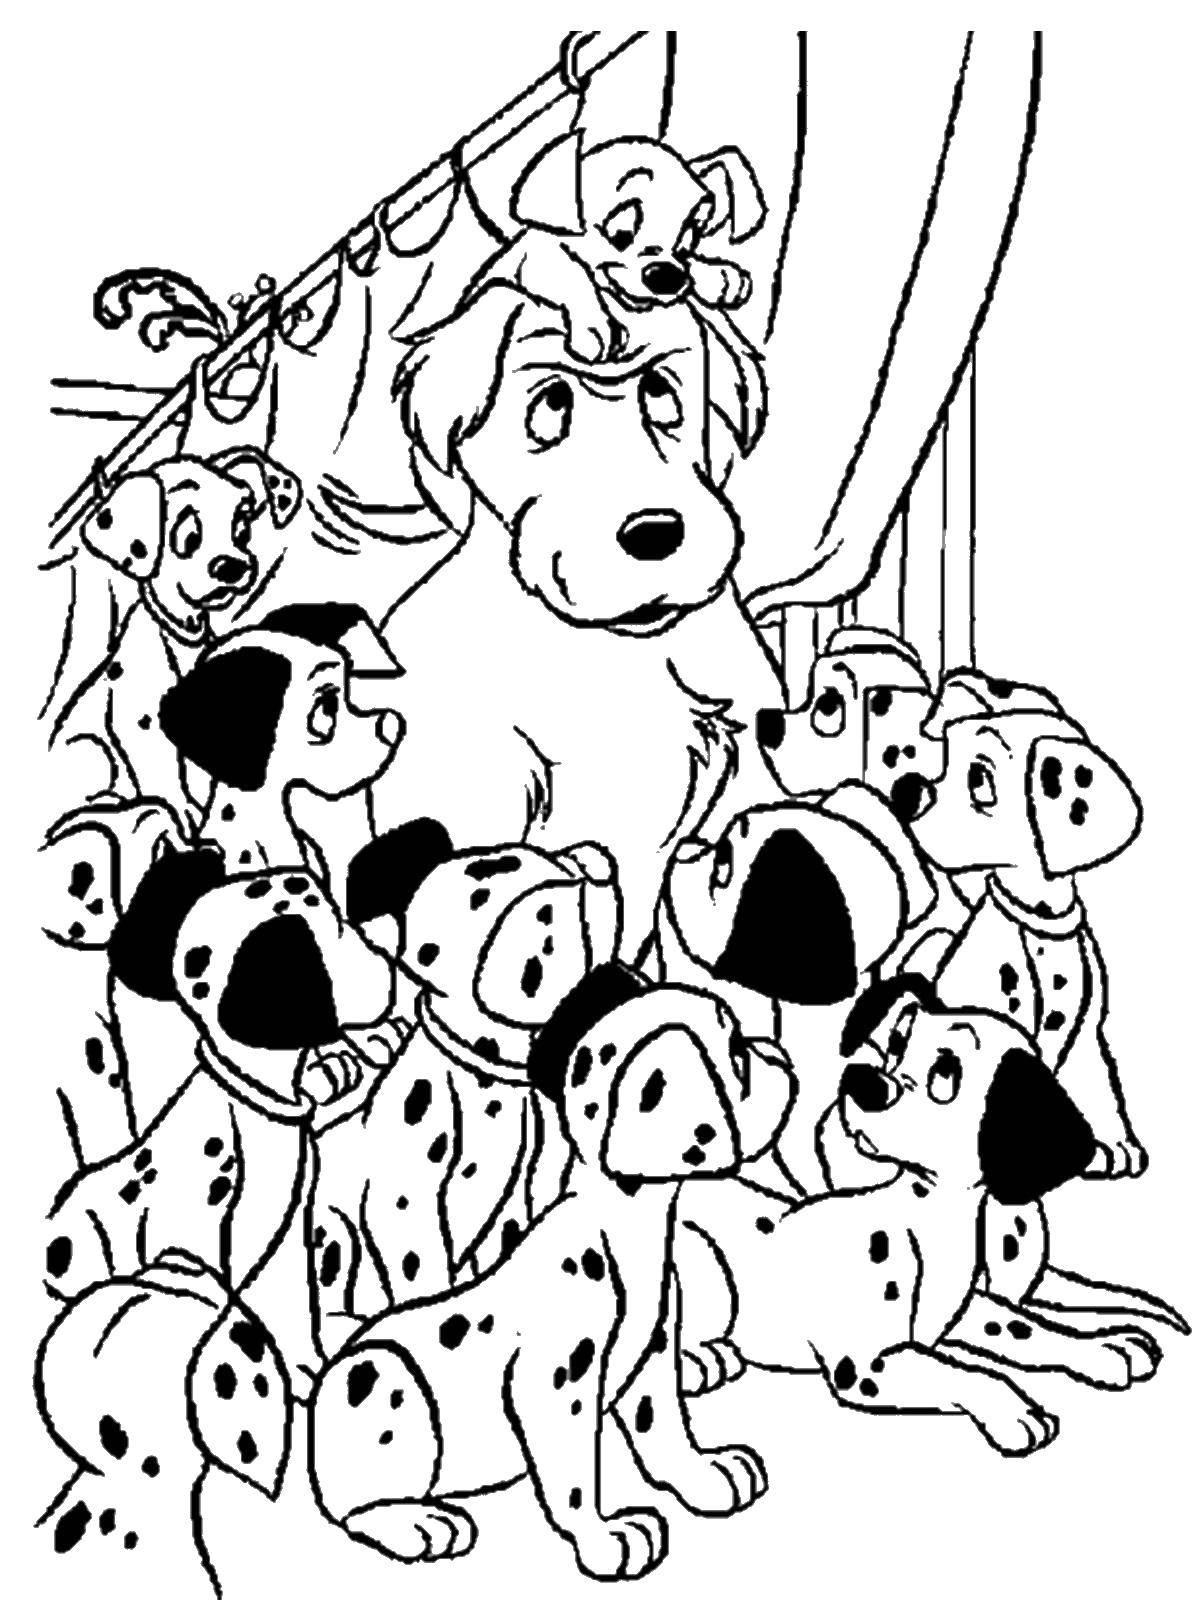 Coloring 101 Dalmatians. Category 101 Dalmatians. Tags:  101 Dalmatians, Disney, cartoon.